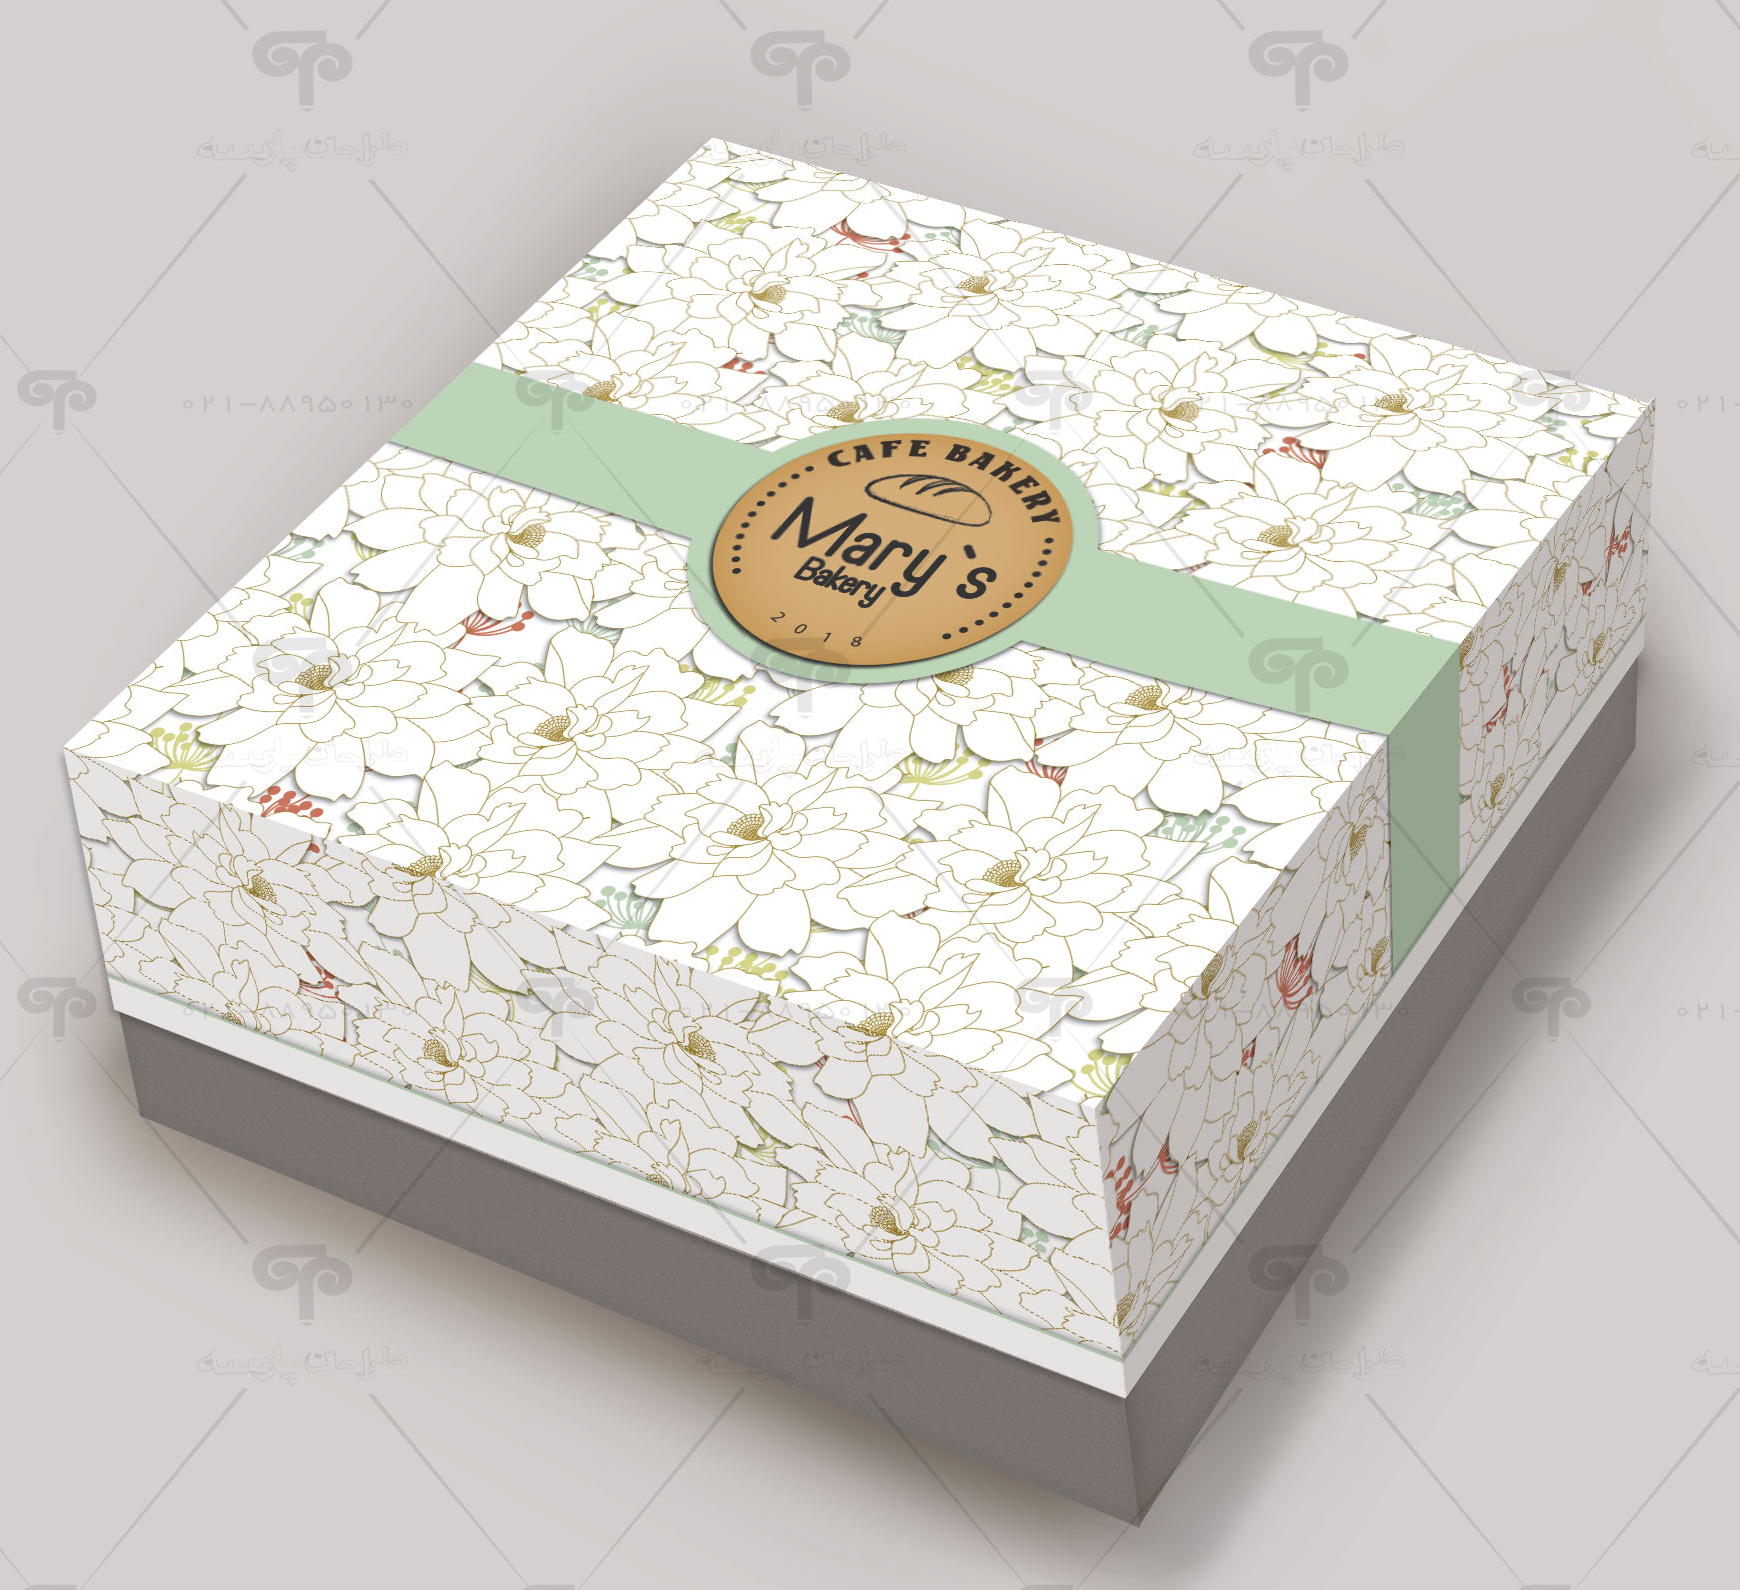 طراحی جعبه شیرینی ماری